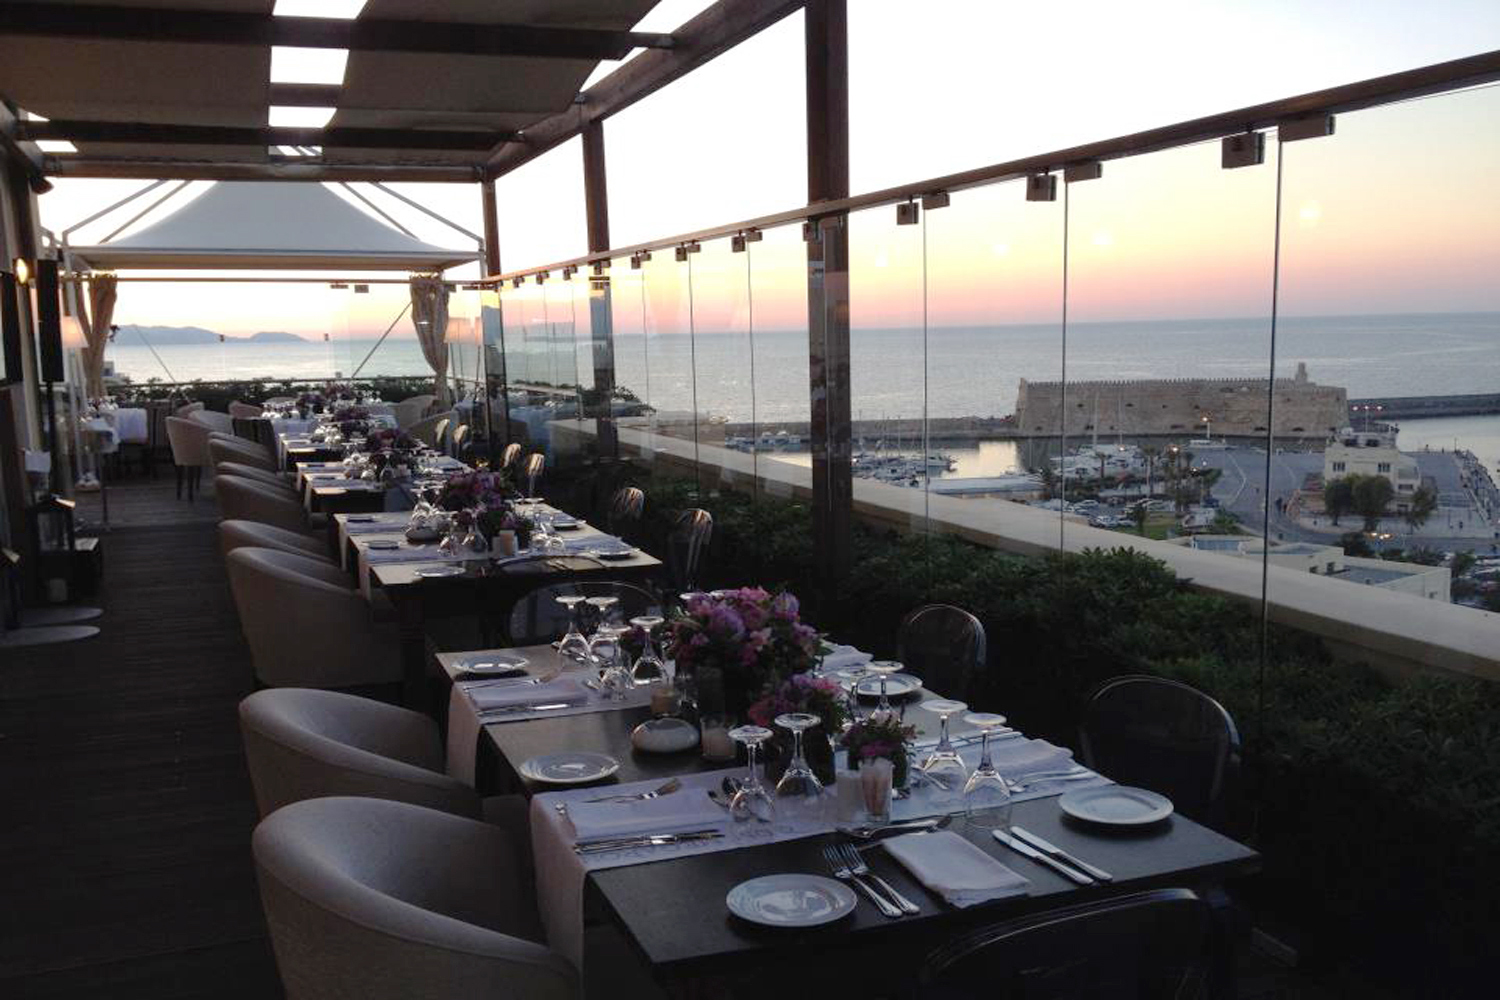 Restaurant “5th” Heraklion Crete